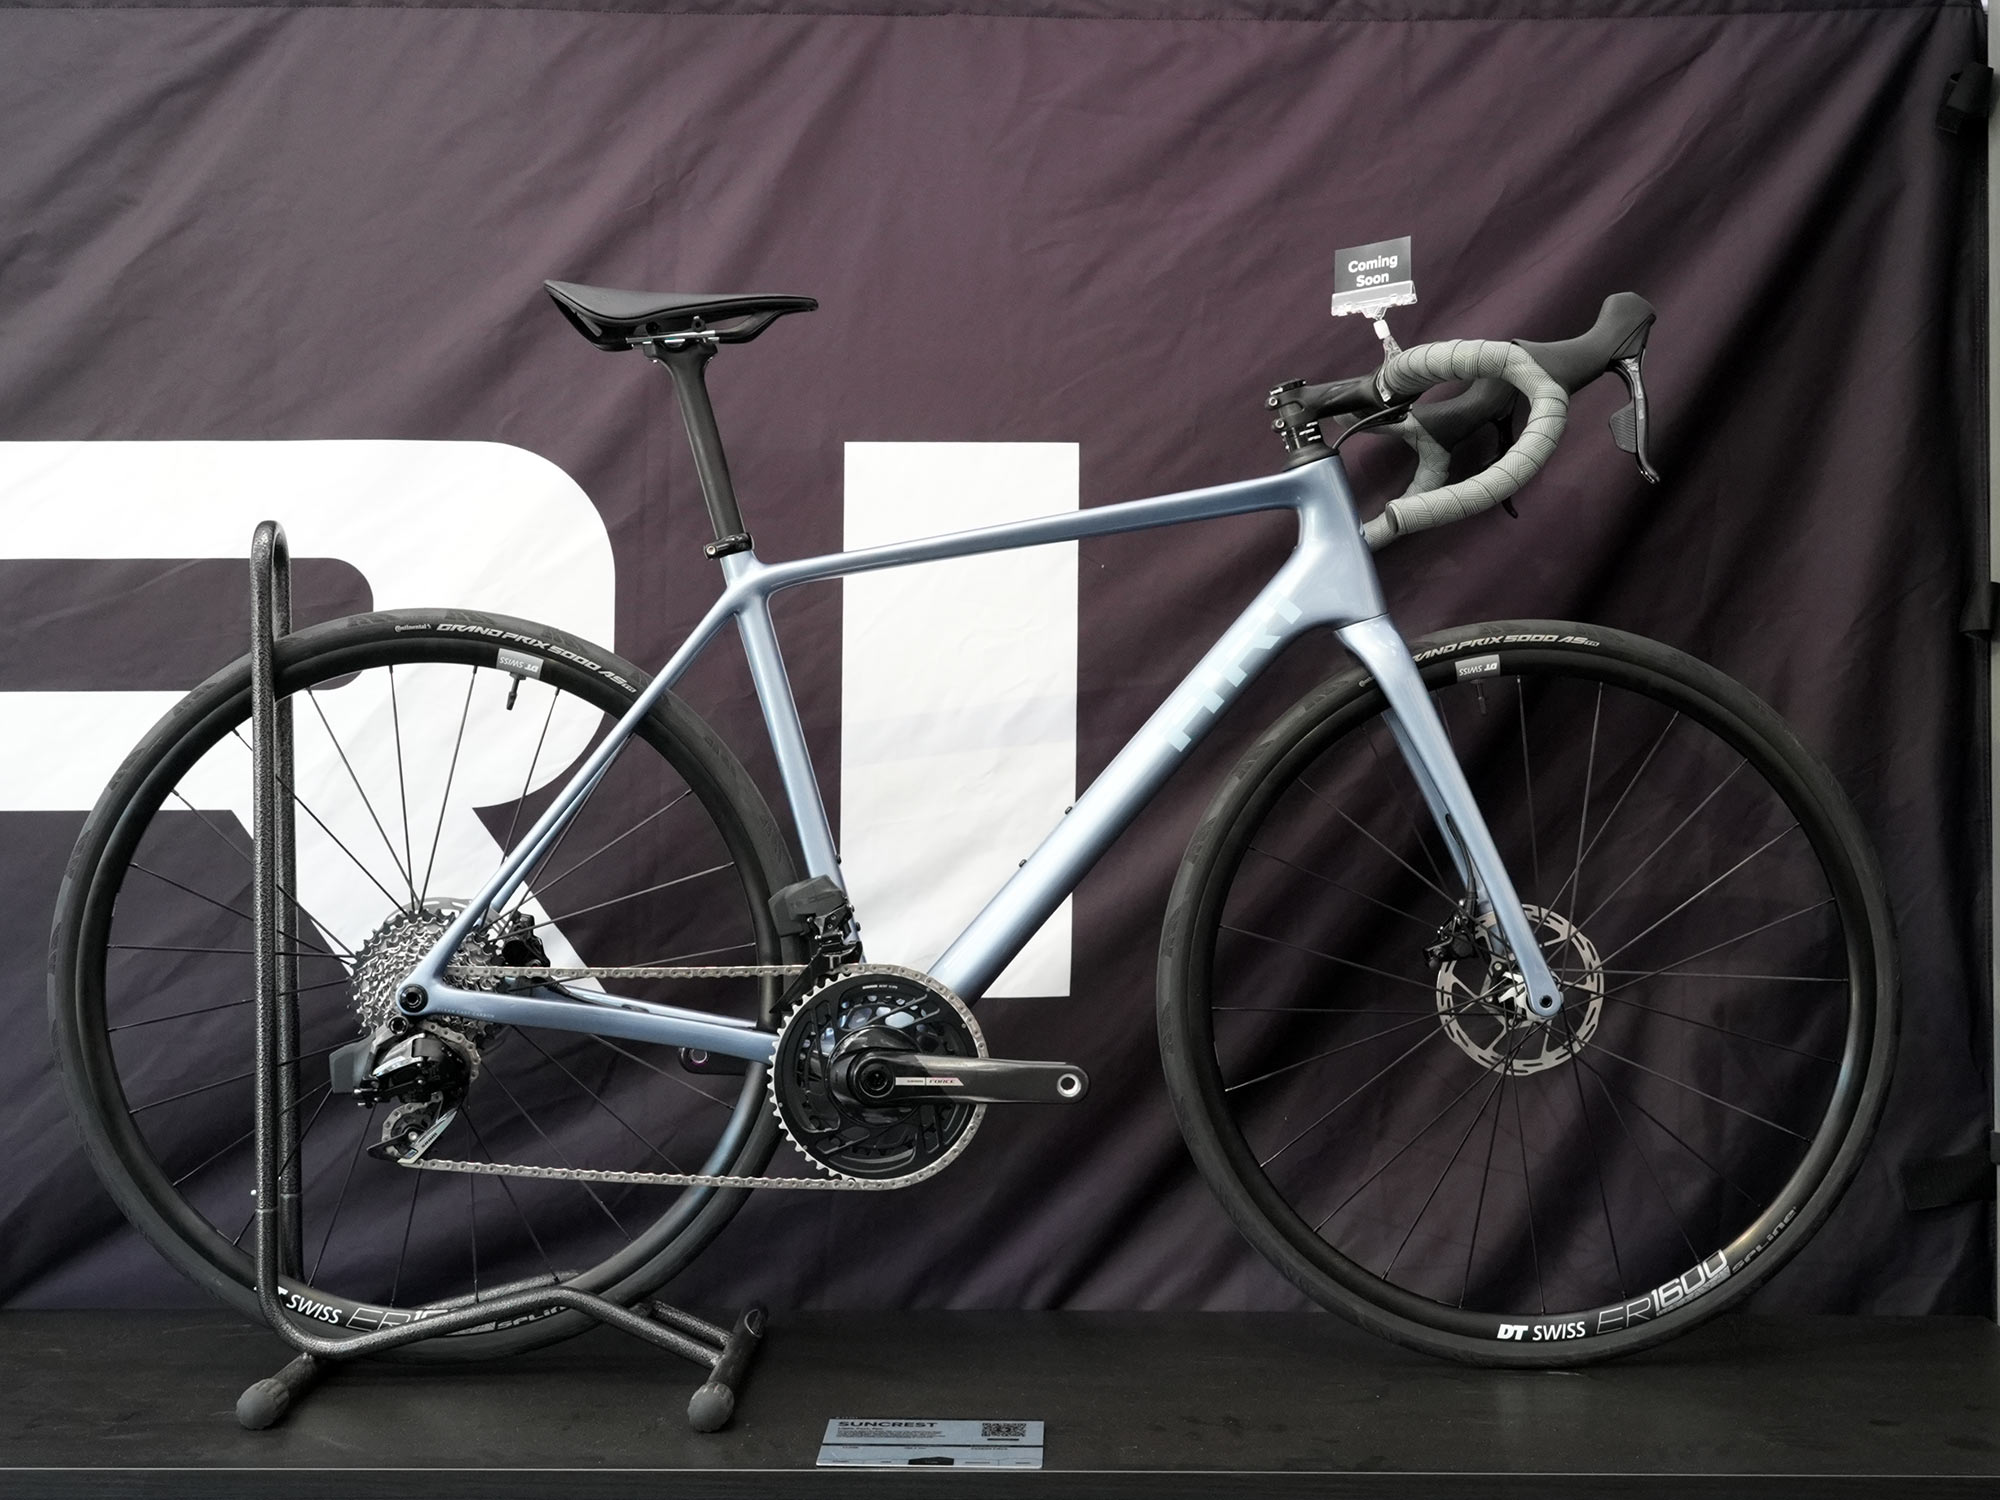 Ari muestra prototipos de bicicletas de carretera para escalada DH, DJ, Trail y 670 g